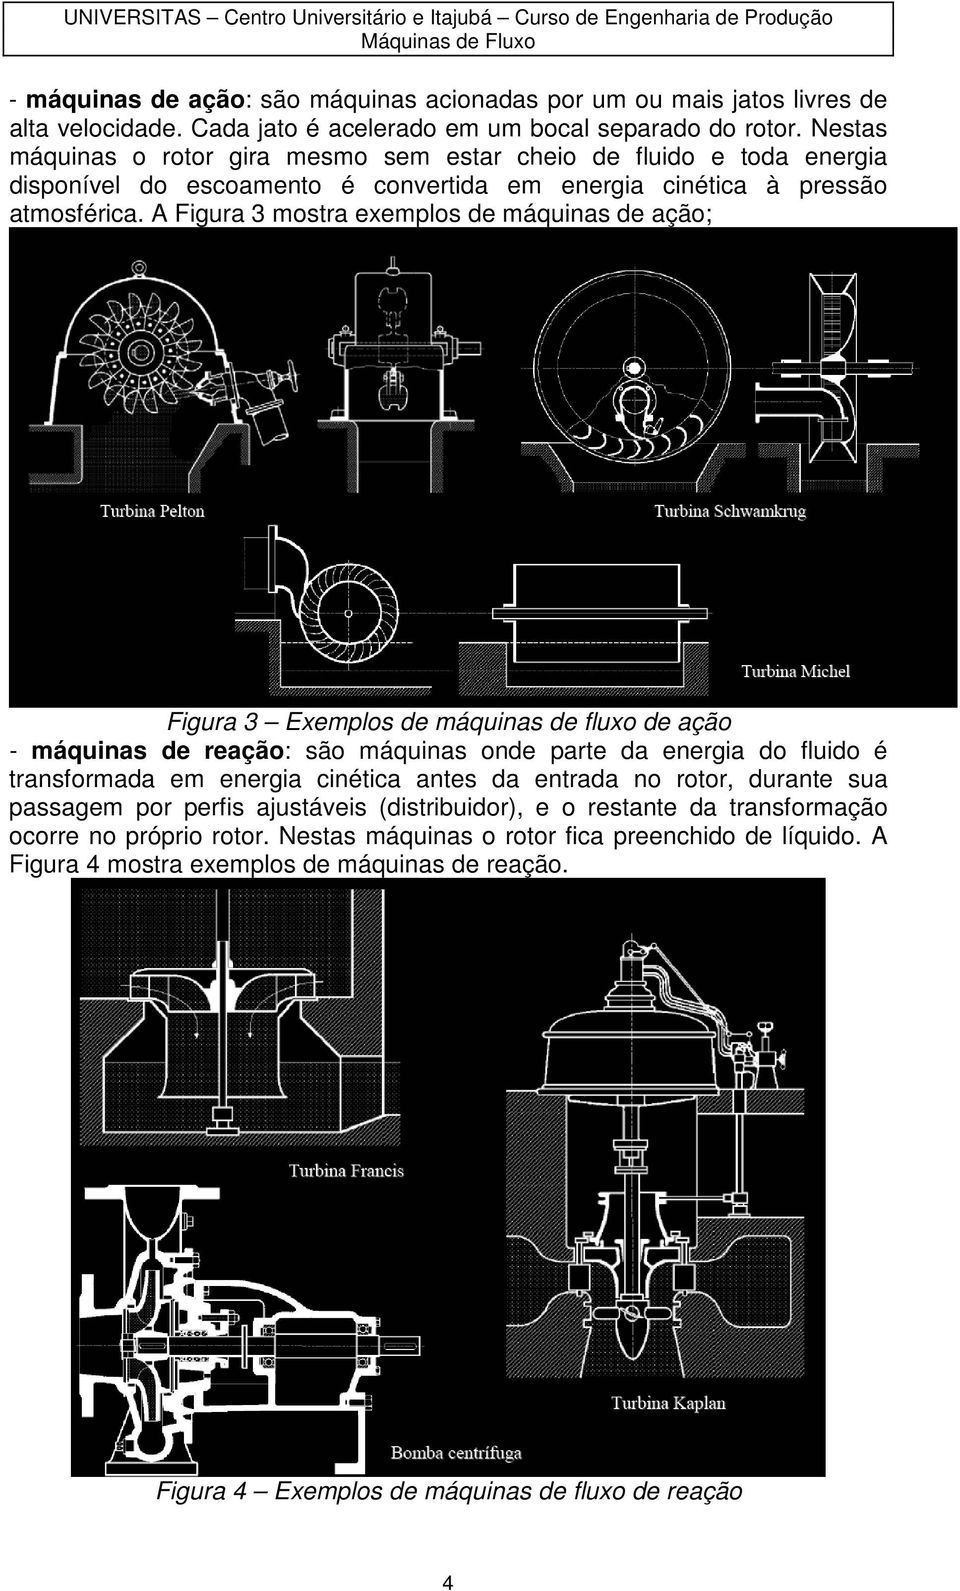 A Figura 3 mstra exempls de máquinas de açã; Figura 3 Exempls de máquinas de flux de açã - máquinas de reaçã: sã máquinas nde parte da energia d fluid é transfrmada em energia